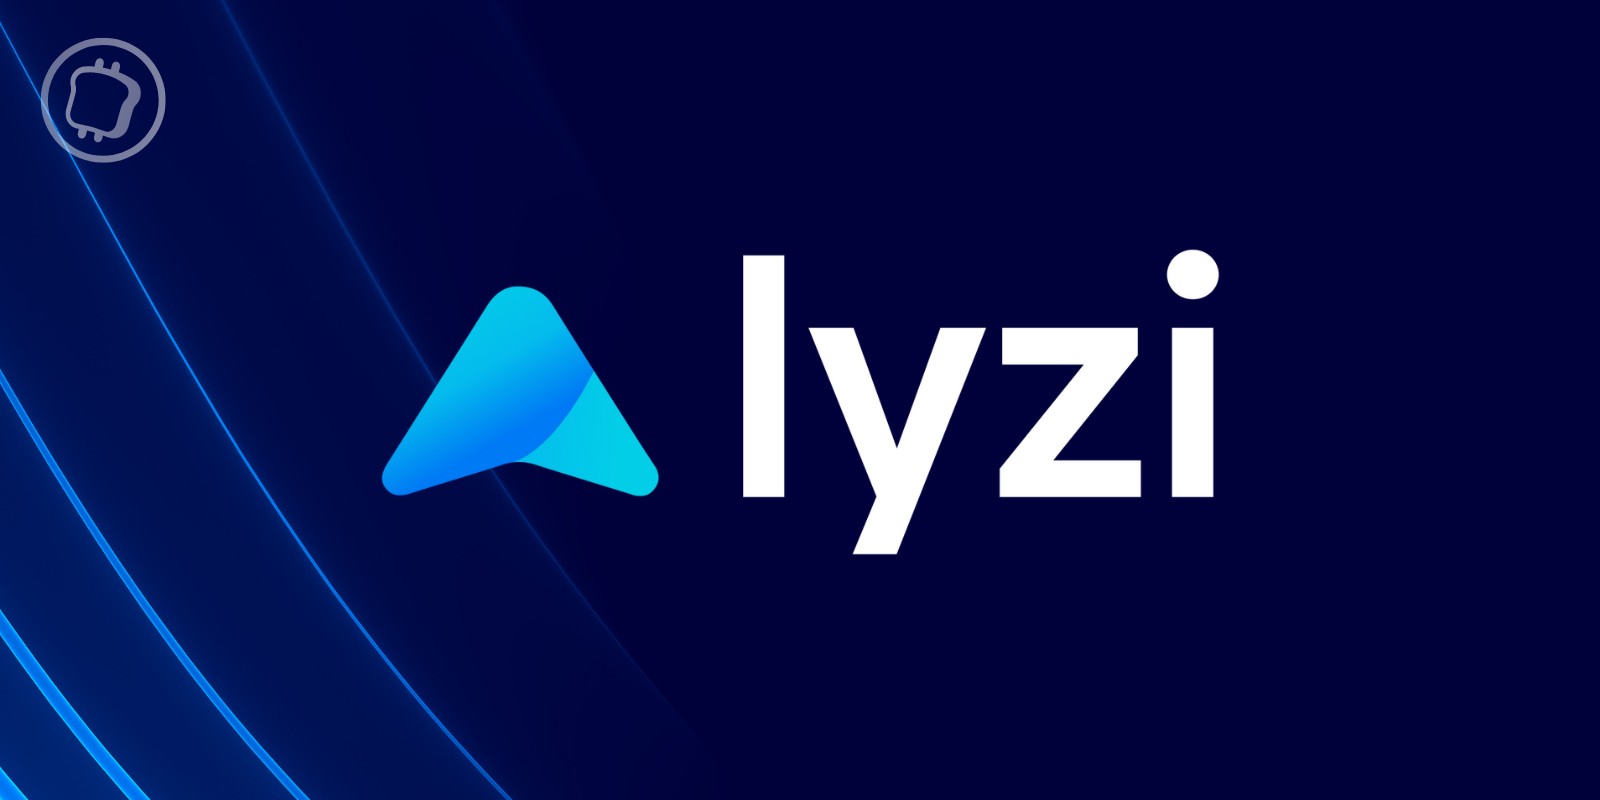 Lyzi annonce un partenariat avec Melyden Auto Paris pour l'achat de voitures de luxe en cryptomonnaies